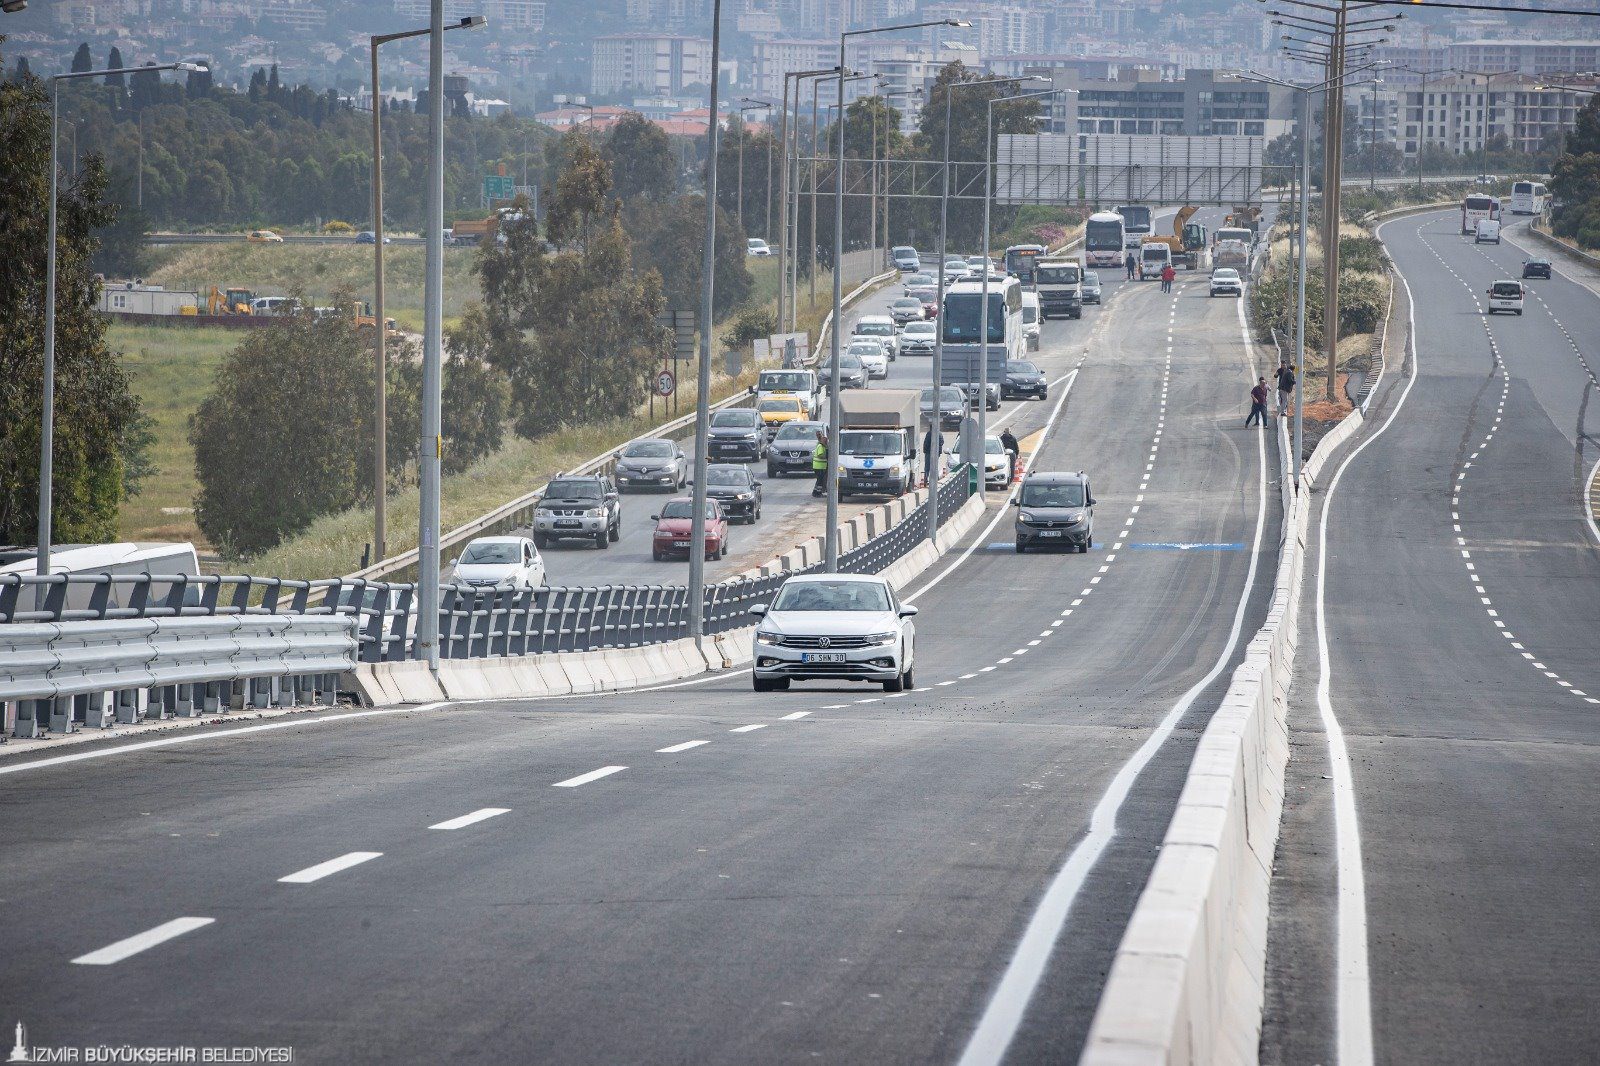 yol <p>Buca ile Bornova’yı kesintisiz birbirine bağlayacak projenin 2,2 kilometrelik viyadük etabı hizmete açıldı. Bölgedeki trafiği rahatlatacak viyadükten aracıyla ilk geçen Başkan Tunç Soyer oldu. 2025’te tamamlanması planlanan projenin tünel etabında çalışmaların hızla ilerlediğini ifade eden Başkan Soyer, “Bugün İzmir için güzel bir gün, çünkü uzun zamandır çok ciddi bir yatırımla emek verdiğimiz projenin sonuna geldik. İzmir'e hayırlı olsun diyorum” dedi. İzmir Büyükşehir Belediyesi, Buca ile Bornova’yı birbirine kesintisiz bağlayacak “Buca Onat Caddesi ile Şehirlerarası Otobüs Terminali ve Çevre Yolu Arası Bağlantı Yolu” projesinin ikinci etabında devam eden Buca Onat Tüneli çalışmalarını hızla sürdürüyor.   Tünelin otogar üzerinden çevreyolu bağlantısını sağlayacak 2,2 kilometrelik viyadük etabı tamamlandı. İzmir Büyükşehir Belediye Başkanı Tunç Soyer ve İzmir Büyükşehir Belediyesi Genel Sekreter Yardımcısı Özgür Ozan Yılmaz'ın ilk sürüşüyle viyadükler hizmete açıldı. Viyadük ve alt geçitlerin hizmete girmesiyle Bornova ve terminal önündeki araç trafiği rahatlayacak.</p>
<p>Soyer: “Bugün İzmir için güzel bir gün”
İzmir Büyükşehir Belediye Başkanı Tunç Soyer, “Bugün İzmir için güzel bir gün, çünkü uzun zamandır çok ciddi bir yatırımla emek verdiğimiz projenin sonuna geldik. Viyadükleri açıyoruz. Buca Onat Tüneli tamamlandığında Buca Bornova arasındaki trafiği önemli ölçüde rahatlatacak. 170 milyon liralık bir yatırım gerçekleştirildi viyadüklerde. Bugünün rakamlarıyla yapılmaya kalkılsaydı, 500 milyon lirayı bulacak bir yatırım. Rakamsal büyüklüğü bir yana getirdiği çözüm bizim için çok daha önemli. O nedenle bütün arkadaşlarıma teşekkür ediyorum. İzmir'e hayırlı olsun diyorum. Tüneli de açtığımız zaman mükemmel bir çözümü İzmir için getirmiş olacağız” dedi.</p>
<p>45 dakikalık yol 10 dakikaya inecek
Konak Tüneli’nden başlayan ve otogar viyadüklerinde son bulan transit yolun en önemli etaplarından 7,1 kilometrelik Buca Onat Tüneli çalışmaları hızla sürüyor. 1 milyar 400 milyon liralık yatırımla devam eden tünel inşaatı tamamlandığında Konak ile Bornova arası 10 dakikaya inecek ve kent trafiği büyük ölçüde rahatlayacak. Tünel ve bağlantı yollarını kapsayan diğer çalışmaların da 2025’in ilk yarısında tamamlanıp İzmirlilerin hizmetine açılması planlanıyor.
Çalışmalar kapsamında iki tüpü birbirine bağlayan üç adet acil giriş noktası bulunuyor. Buca yönünde 650’inci metresindeki ilk geçiş tamamlandı. Projeyle havaalanından gelen bir yurttaş şehir trafiğine girmeden bu transit yolu kullanarak şehrin kuzey kesimlerine hızlı bir şekilde ulaşabilecek. Kuzey bölgesinden gelen yolcularsa otogar tarafından gelerek havaalanı, Çeşme gibi ilçelere ulaşım sağlayabilecek. Böylelikle 45 dakika olan seyahat süresi 10 dakikaya inecek.</p>